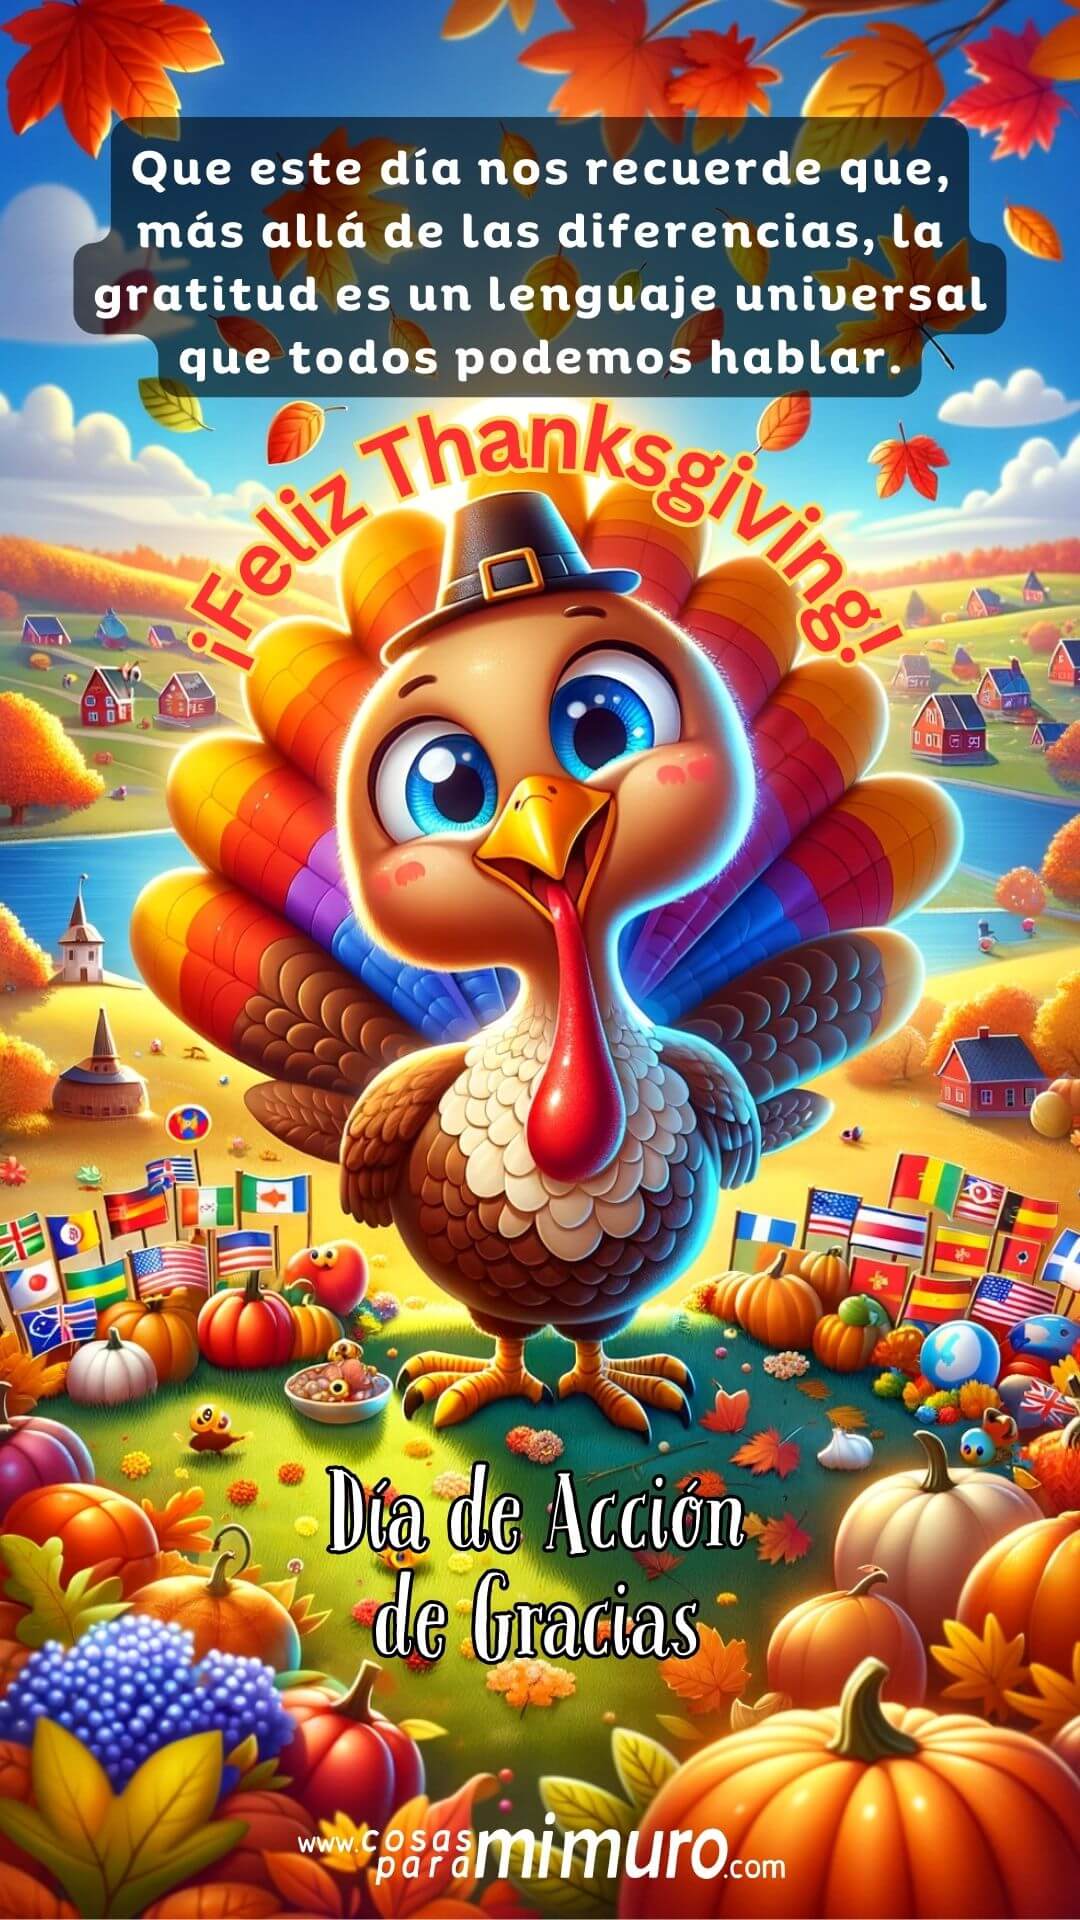 Celebrando la Gratitud Internacionalmente: Cómo el Día de Acción de Gracias Toca Corazones Globalmente